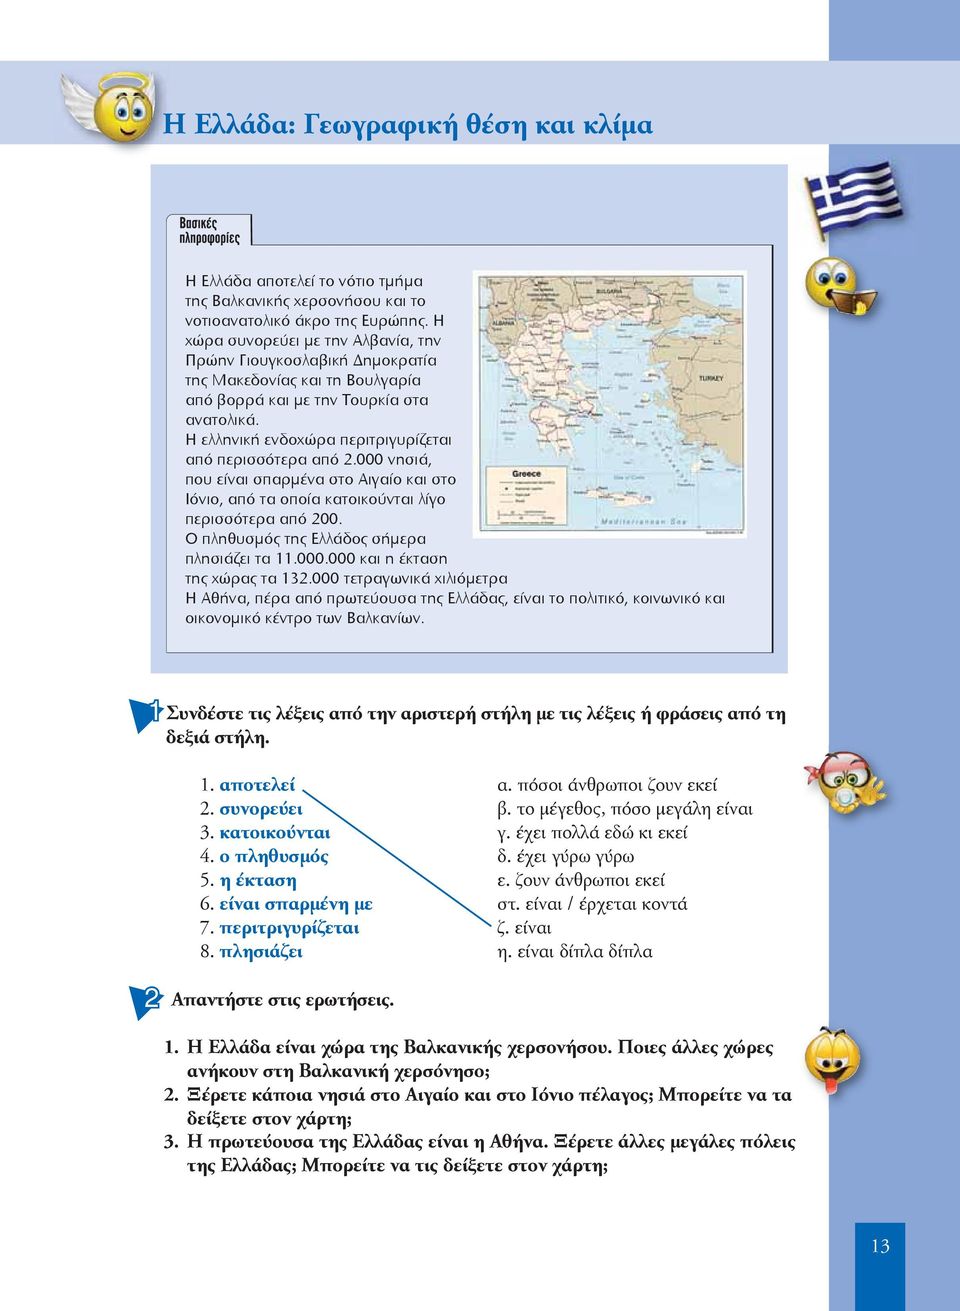 Η ελληνική ενδοχώρα περιτριγυρίζεται από περισσότερα από 2.000 νησιά, που είναι σπαρμένα στο Αιγαίο και στο Ιόνιο, από τα οποία κατοικούνται λίγο περισσότερα από 200.